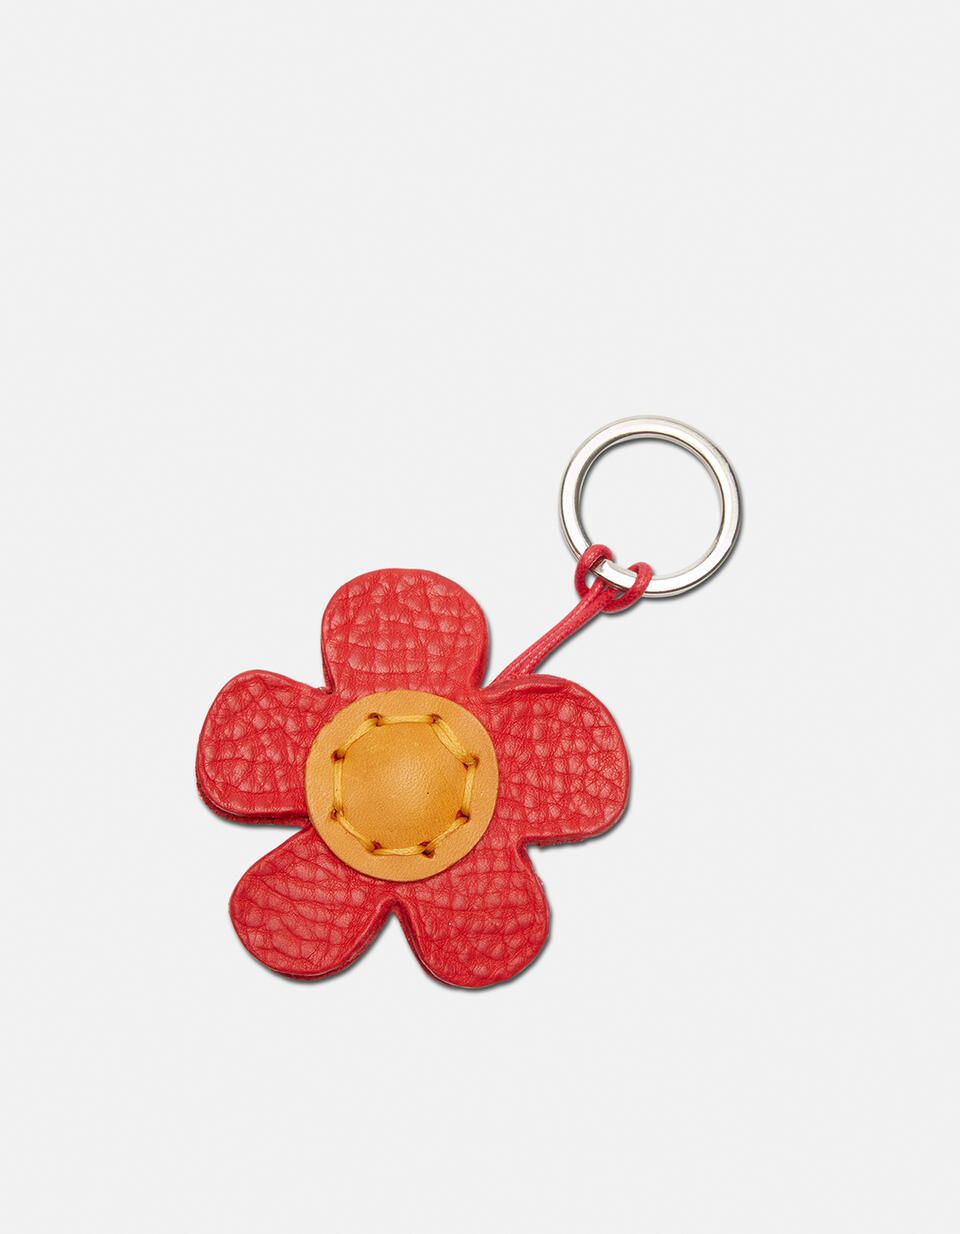 Flower leather Keychain - Key holders - Women's Accessories | Accessories ROSSO - Key holders - Women's Accessories | AccessoriesCuoieria Fiorentina